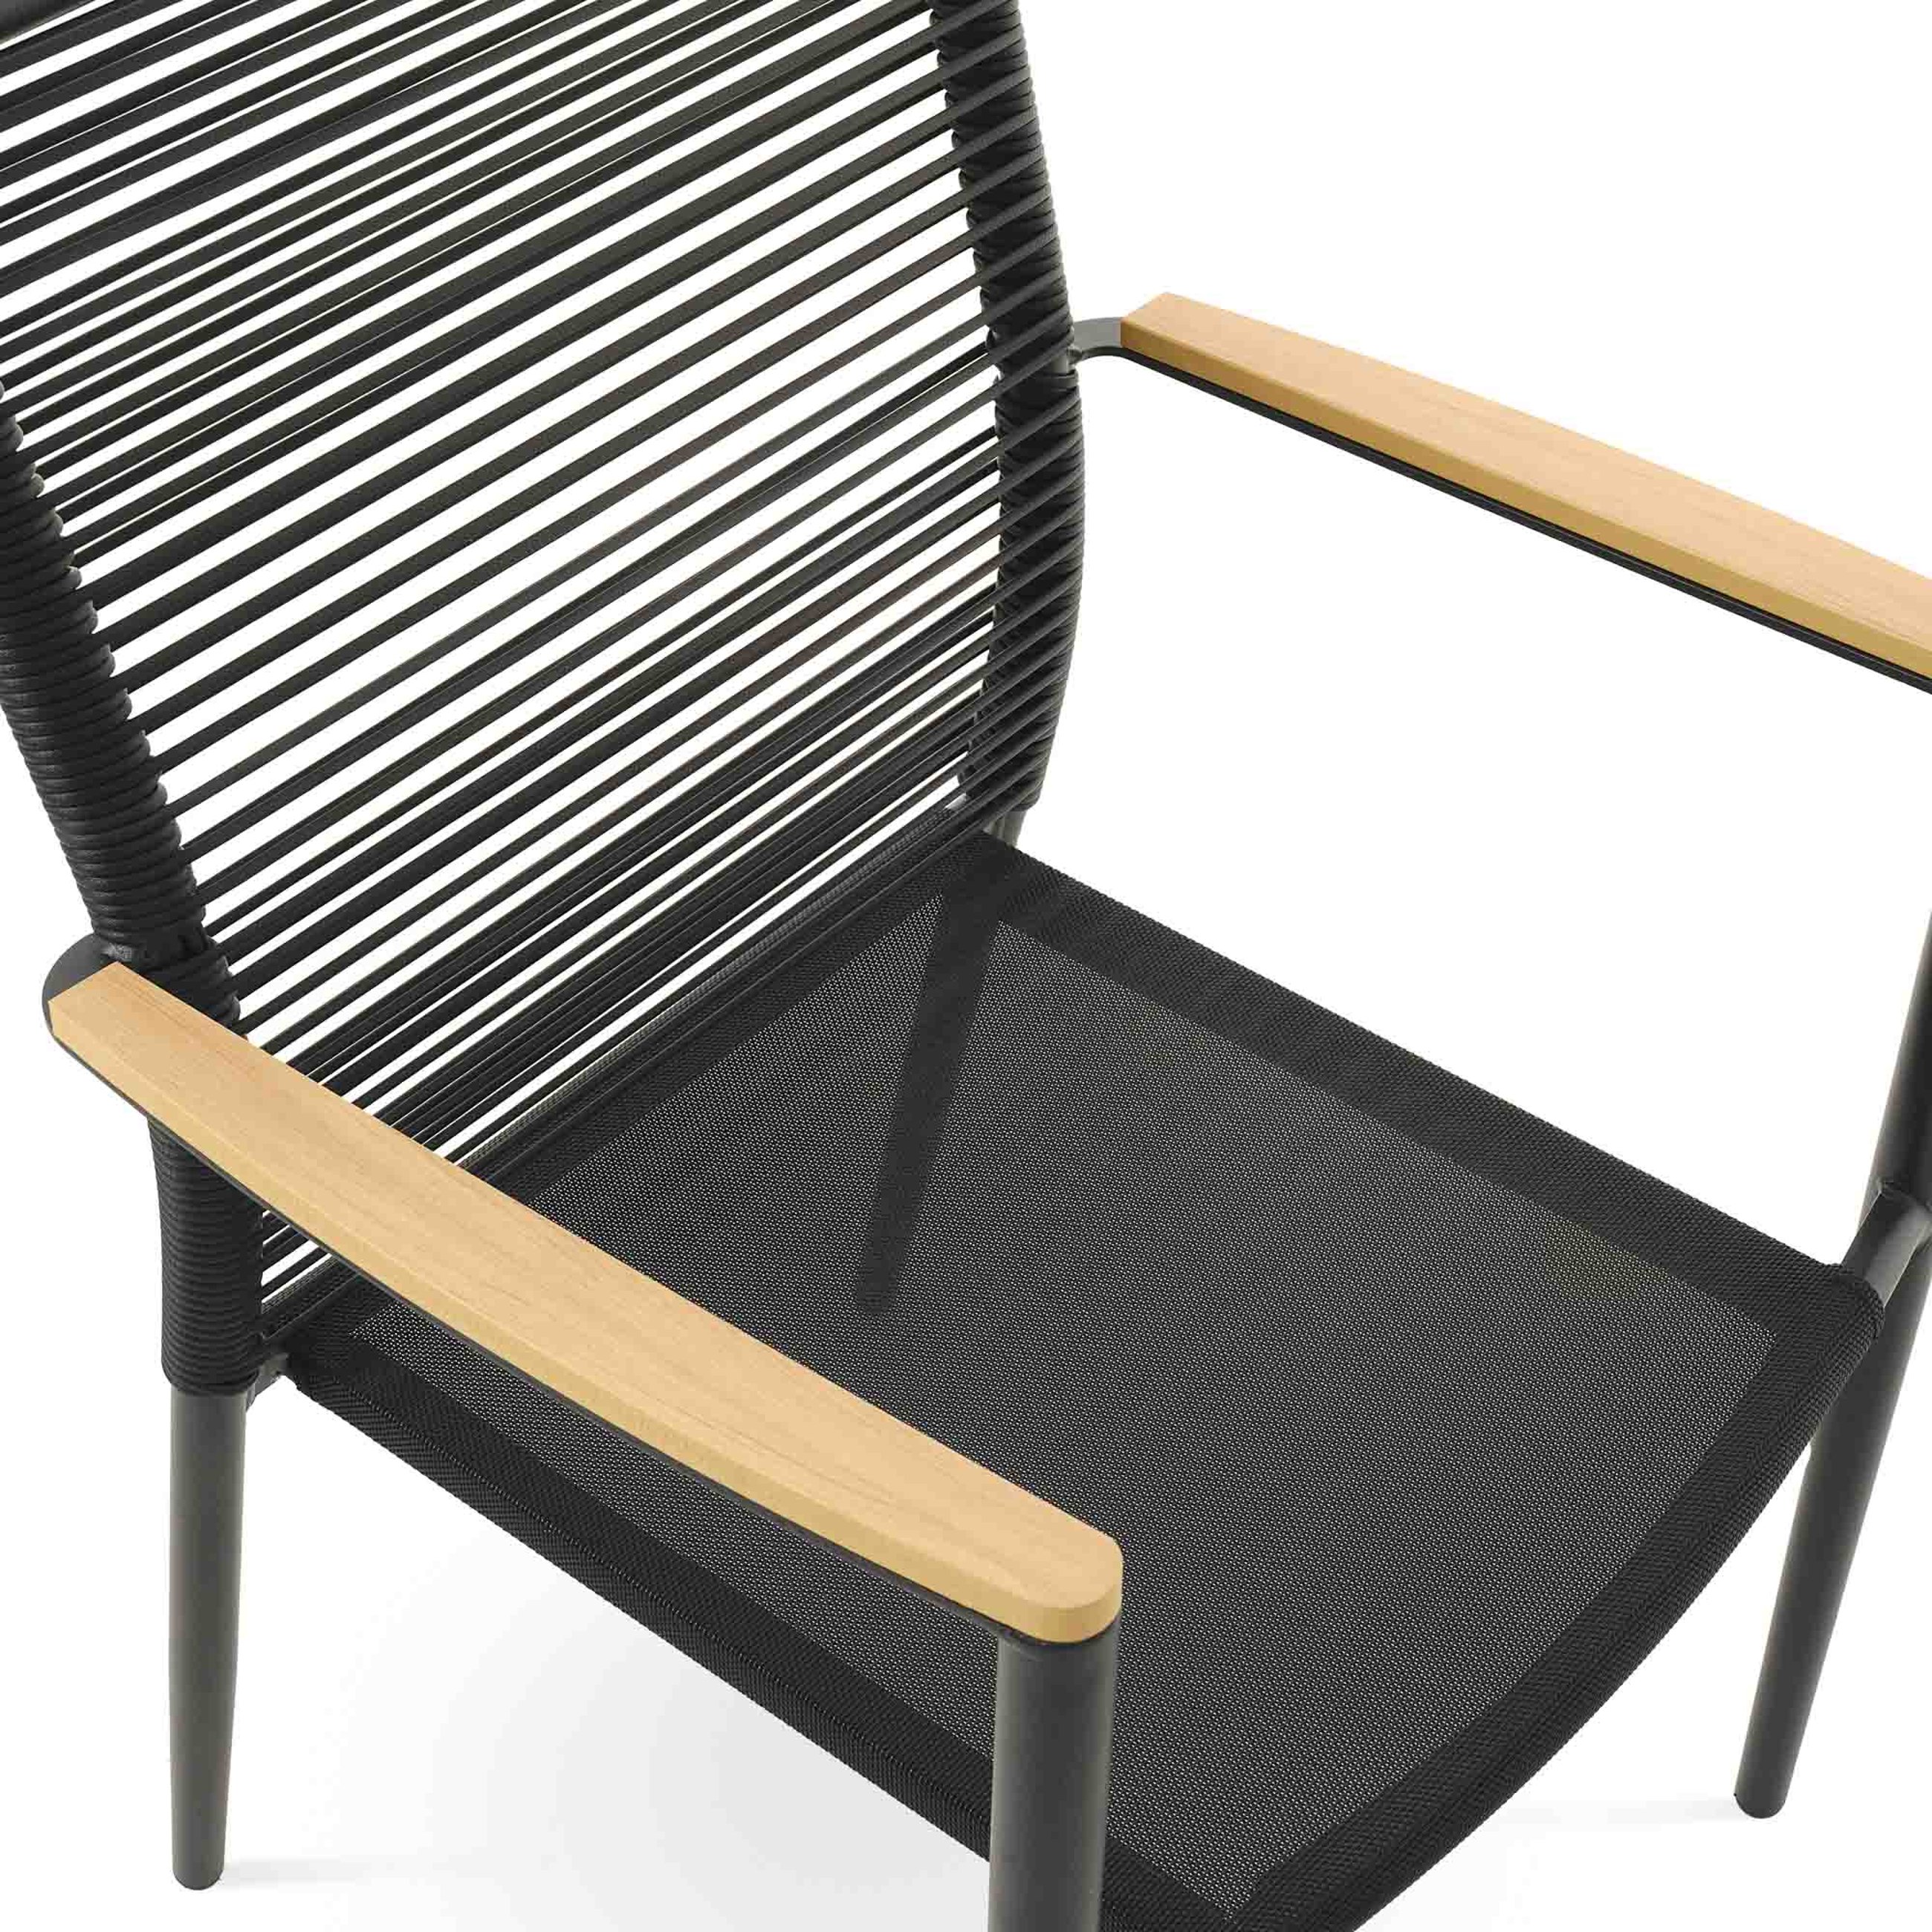 Siedzisko krzesła Asti wykonane z nowoczesnej tkaniny Textilene w kolorze czarnym